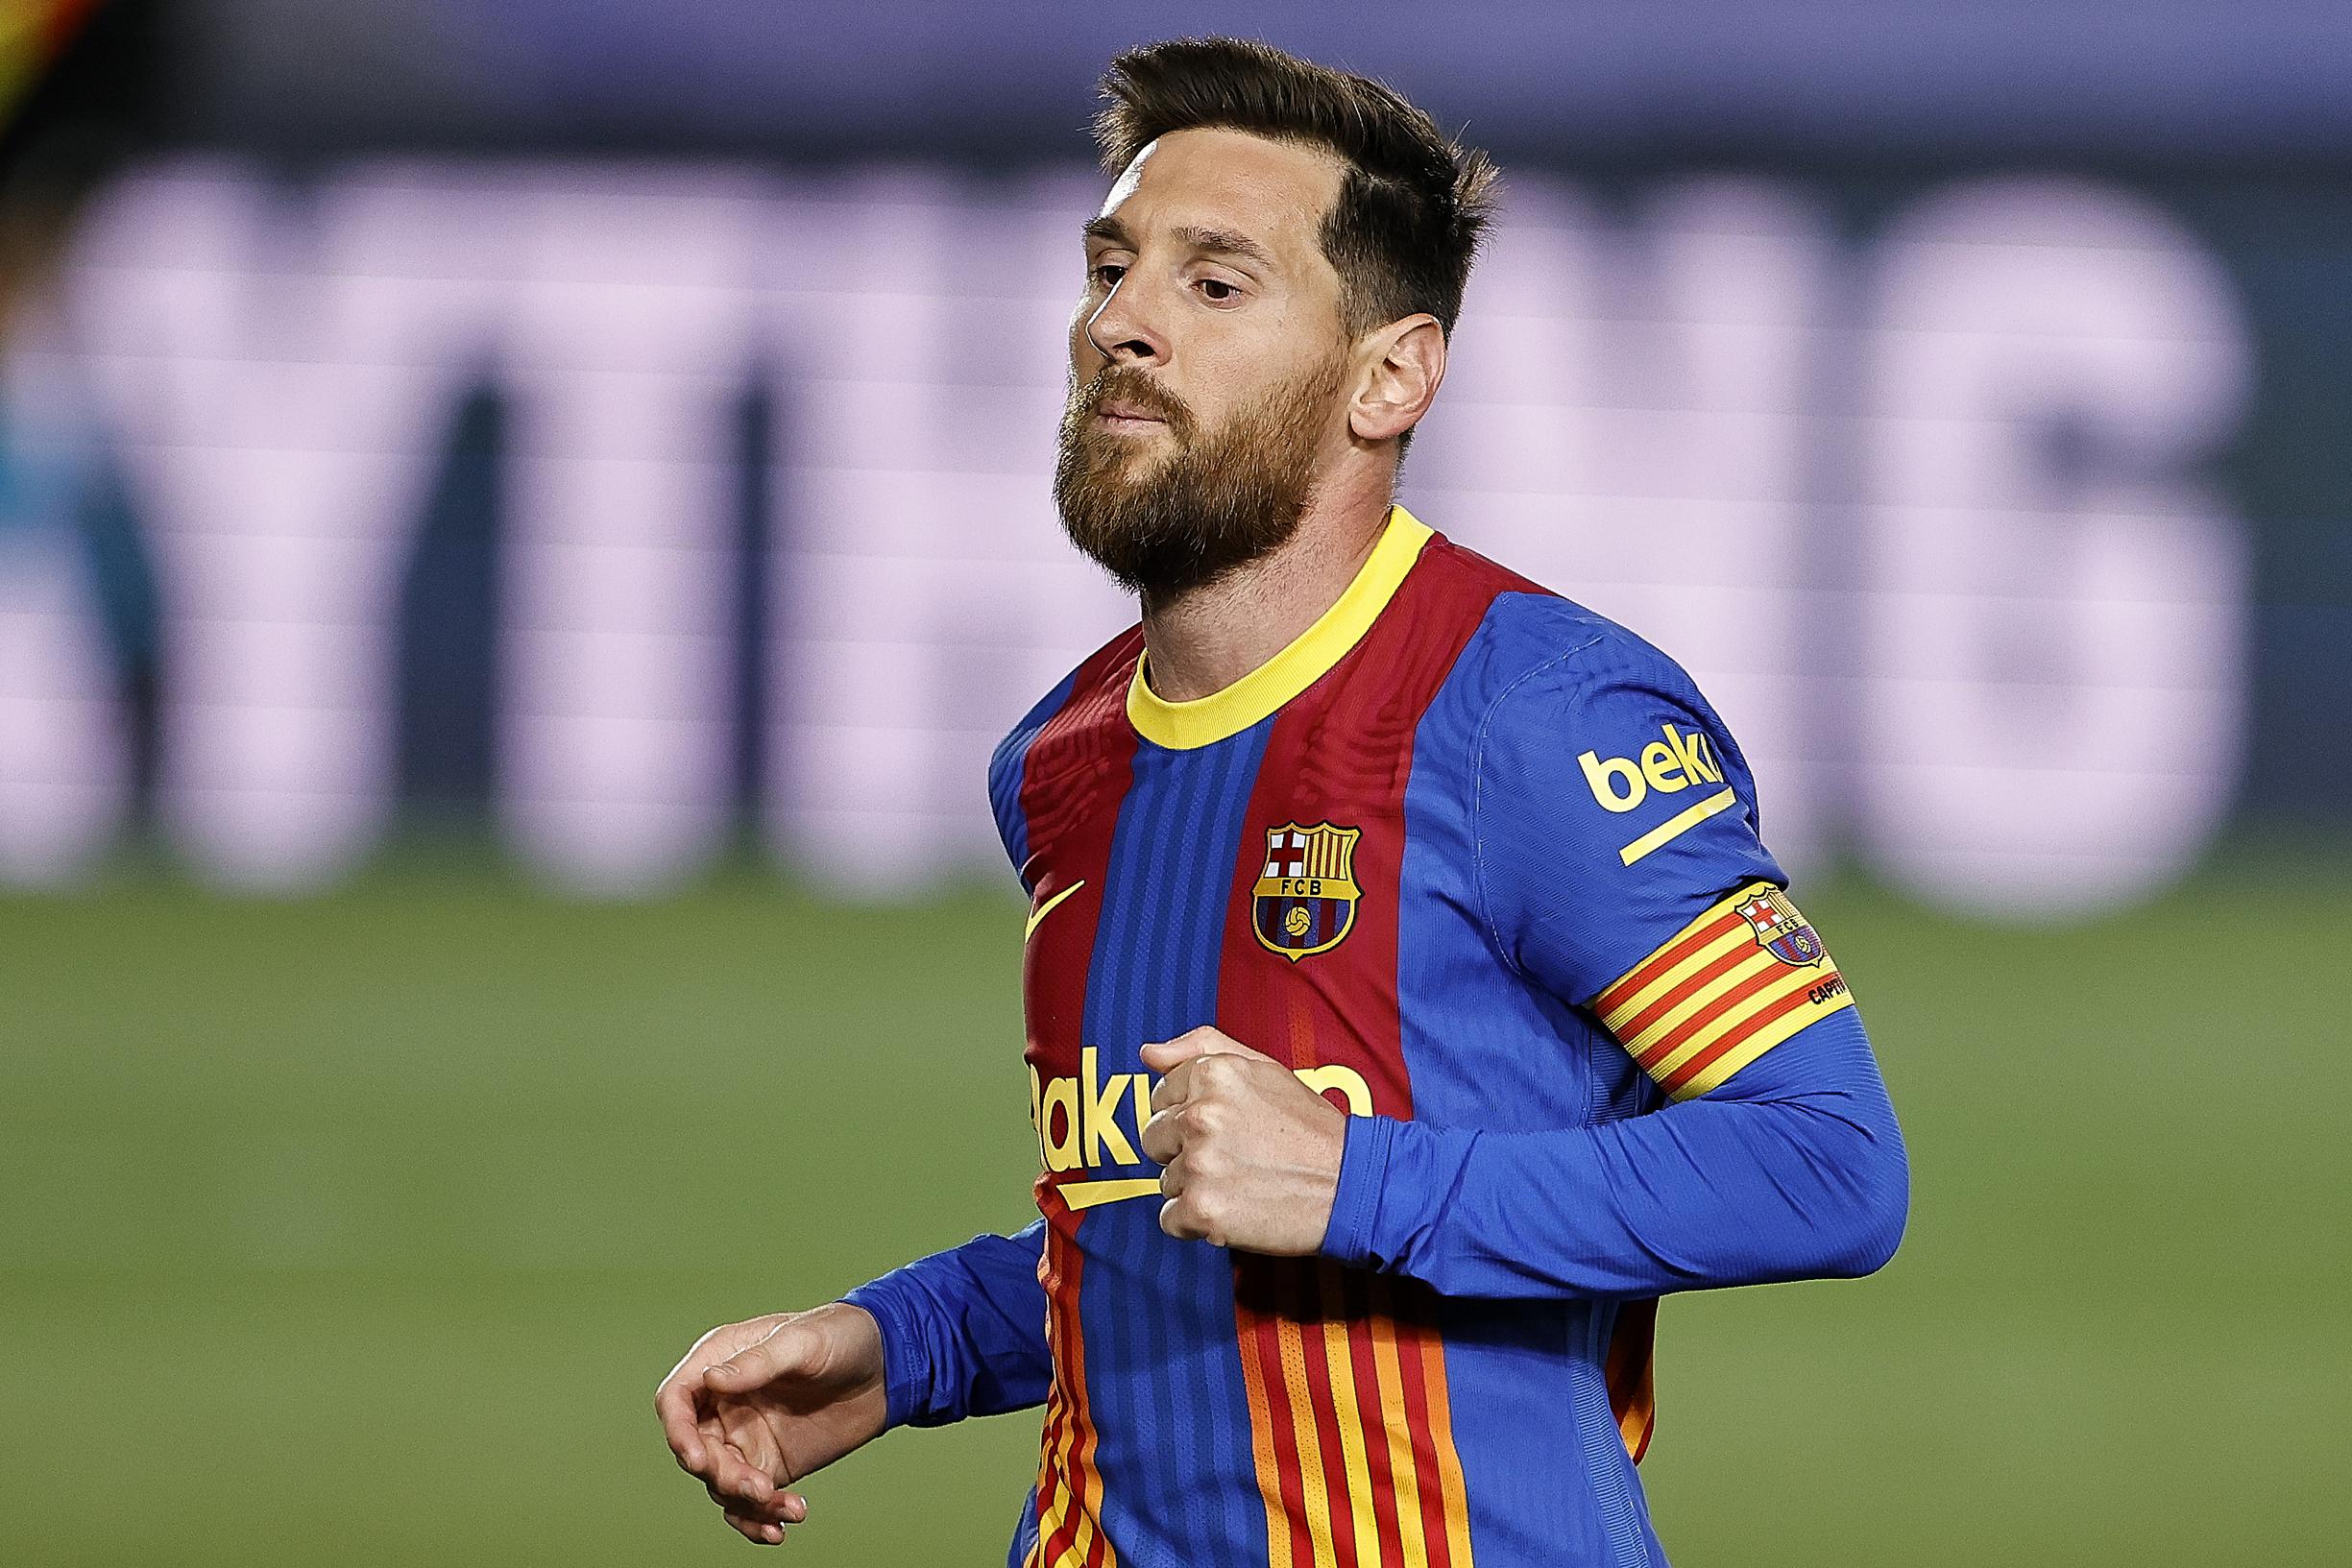 Blozend Ga wandelen Betasten Wilt u authentieke voetbalschoenen van Messi kopen? Het kan en dan nog voor  het goede doel | Het Nieuwsblad Mobile